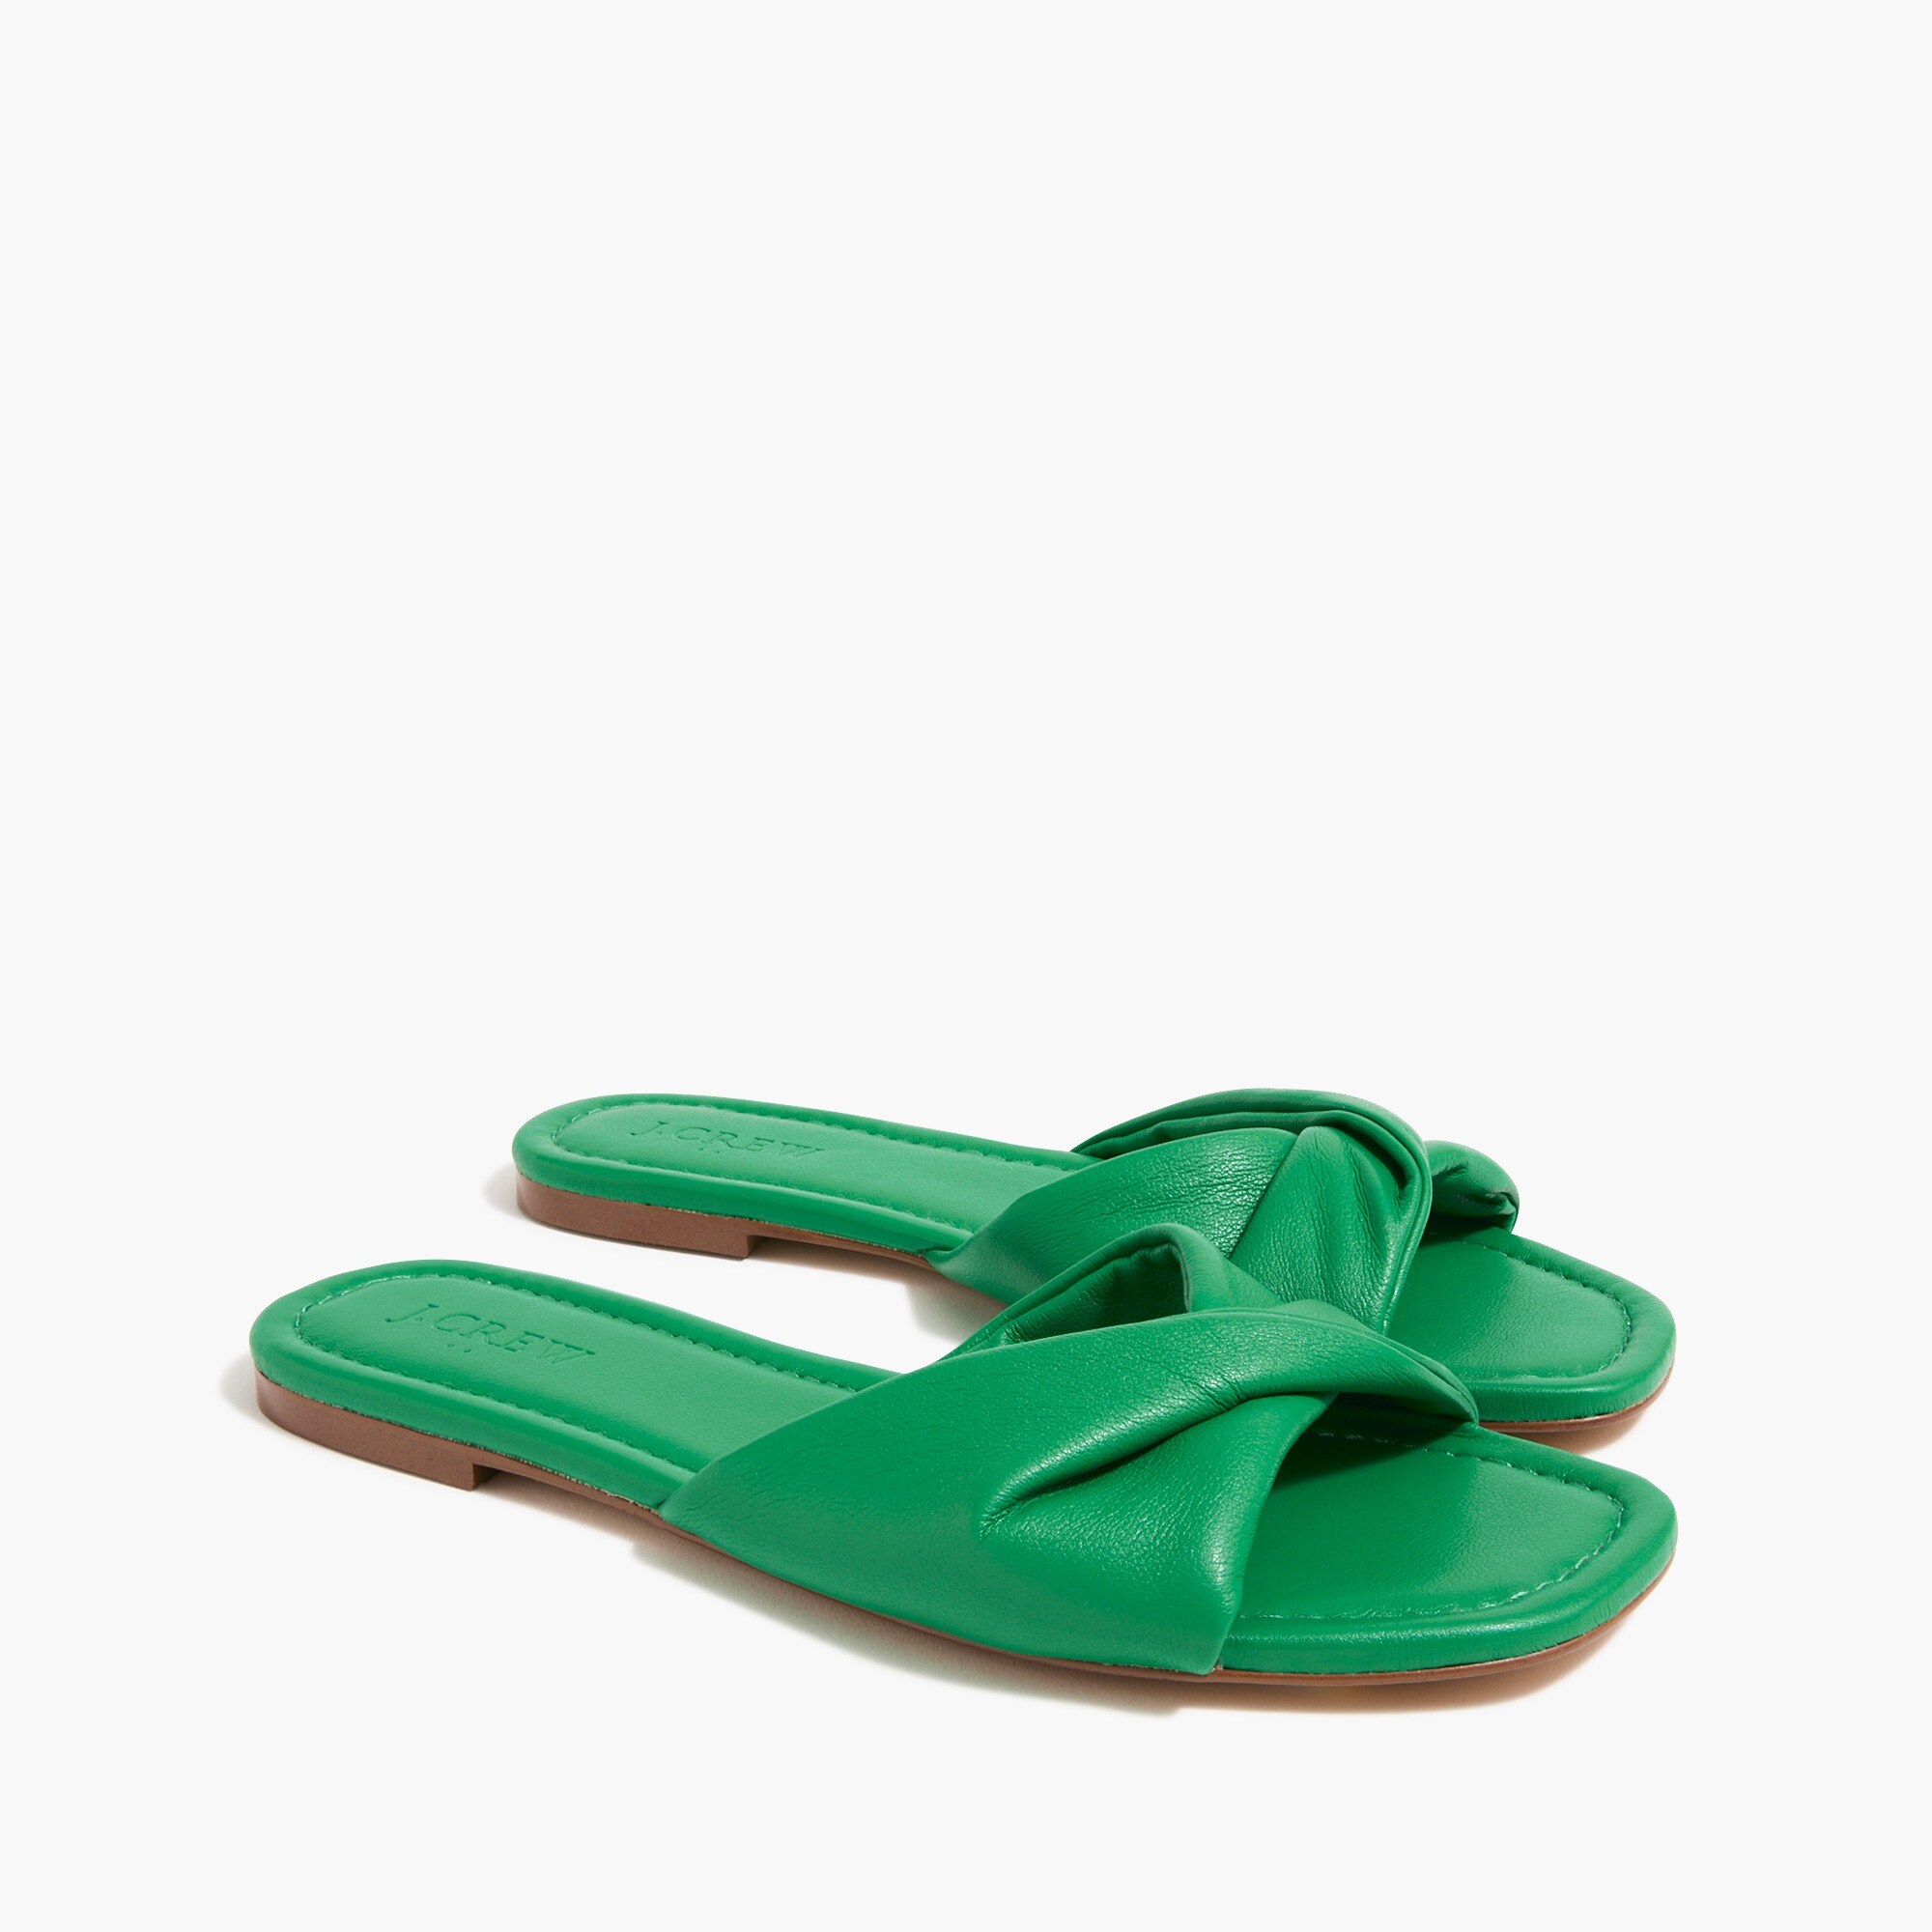  Twisted slide sandals